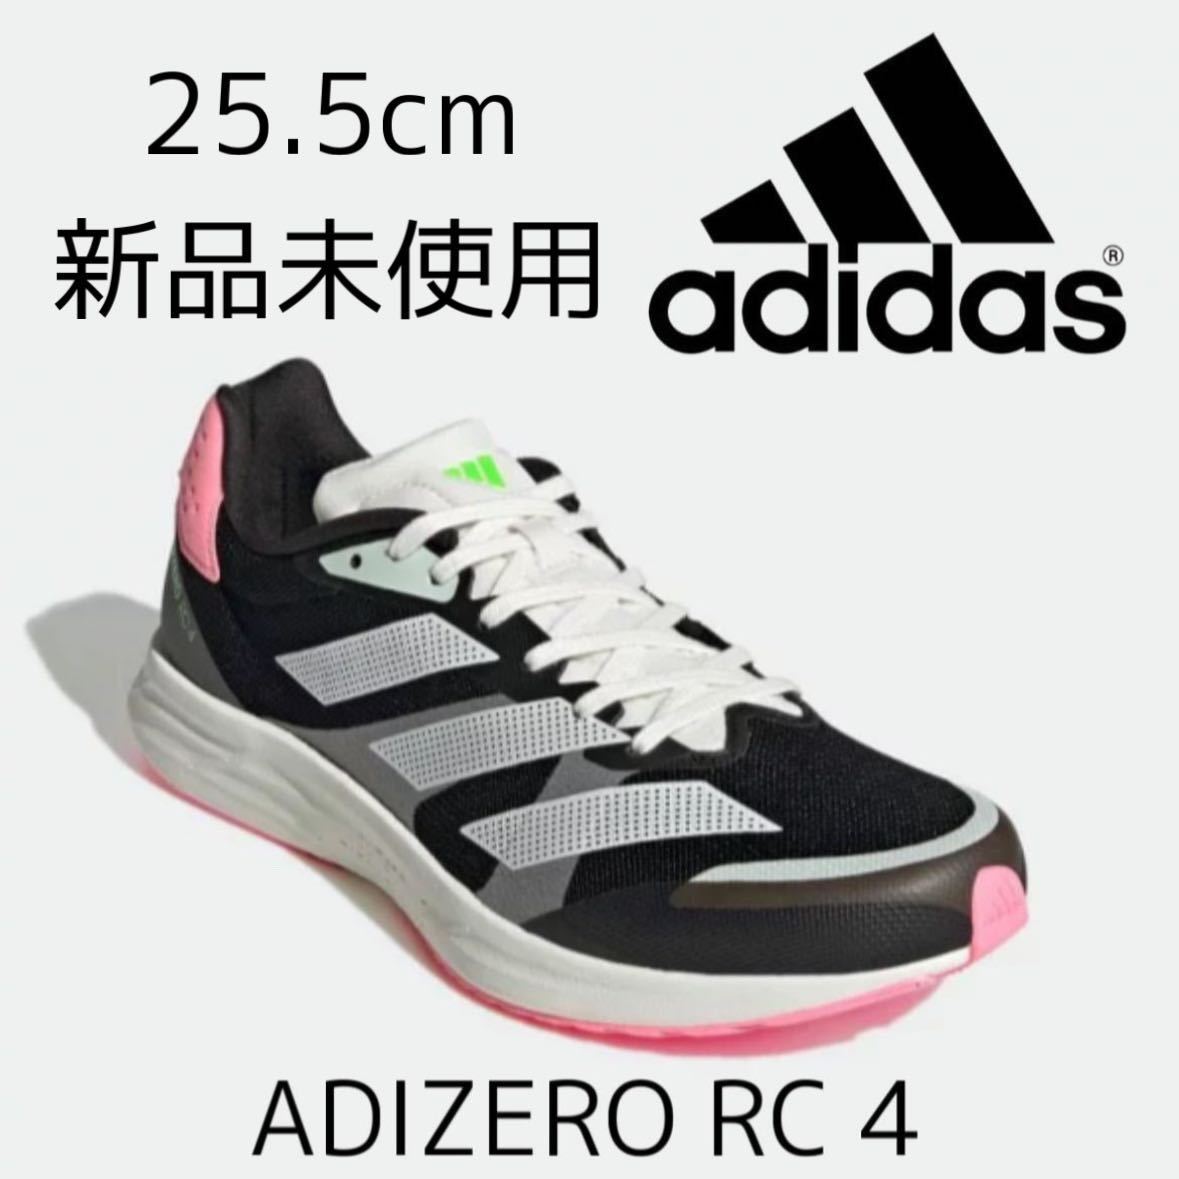 25.5cm 新品 adidas adizero RC 4 アディゼロ ランニングシューズ 軽量 マラソン レース トレーニングシューズ 黒 ブラック 白 ピンク 255_画像1